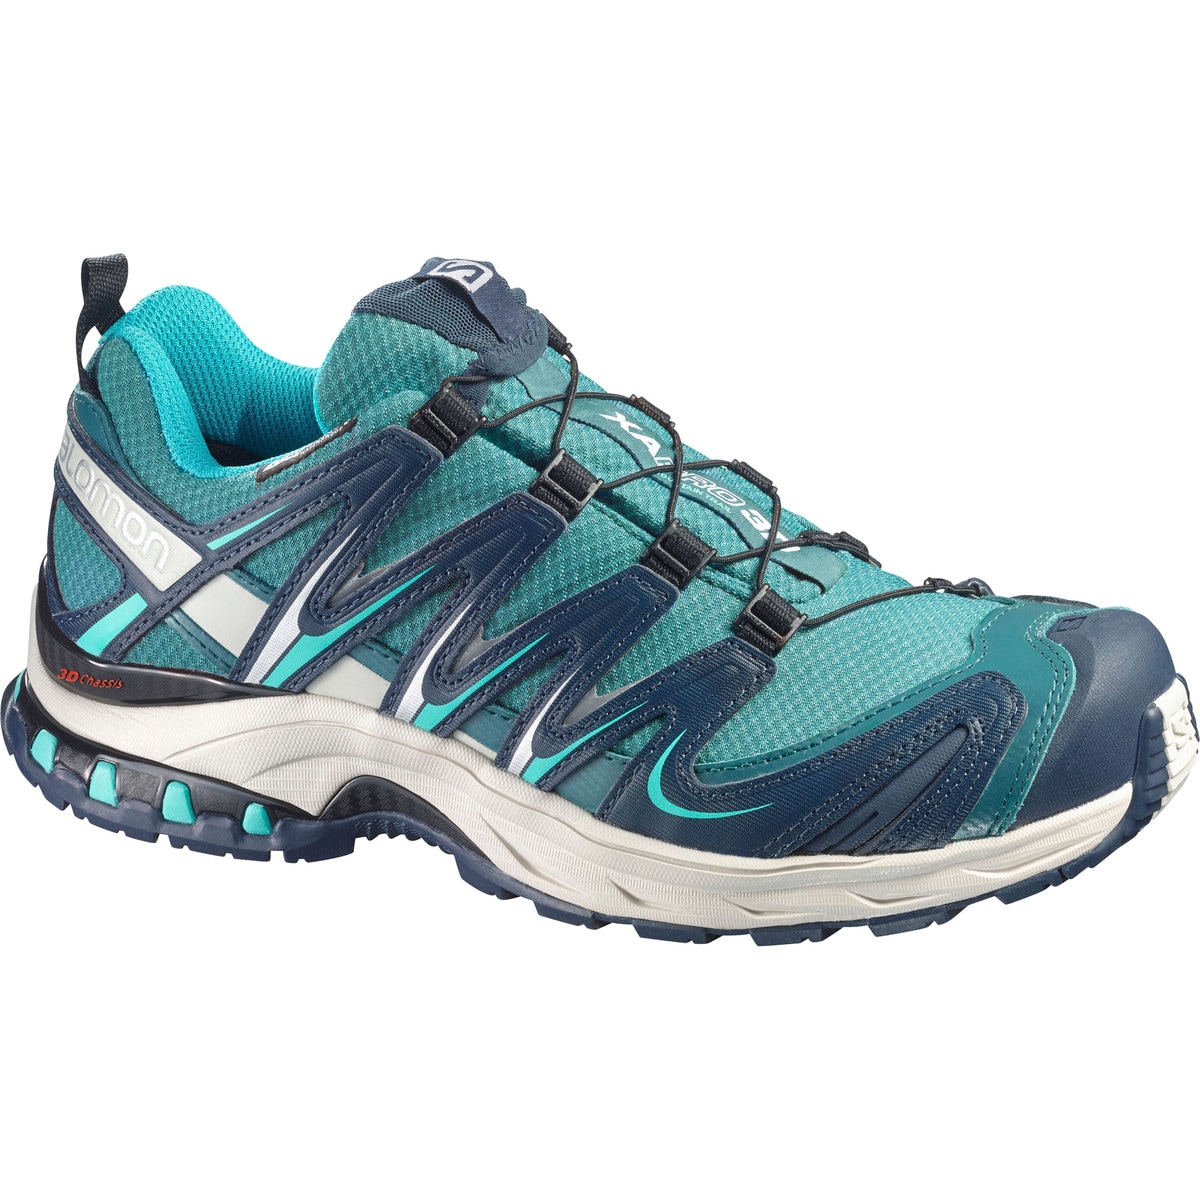 Salomon XA Pro 3D CS WP Trail Shoe Women's - Footwear